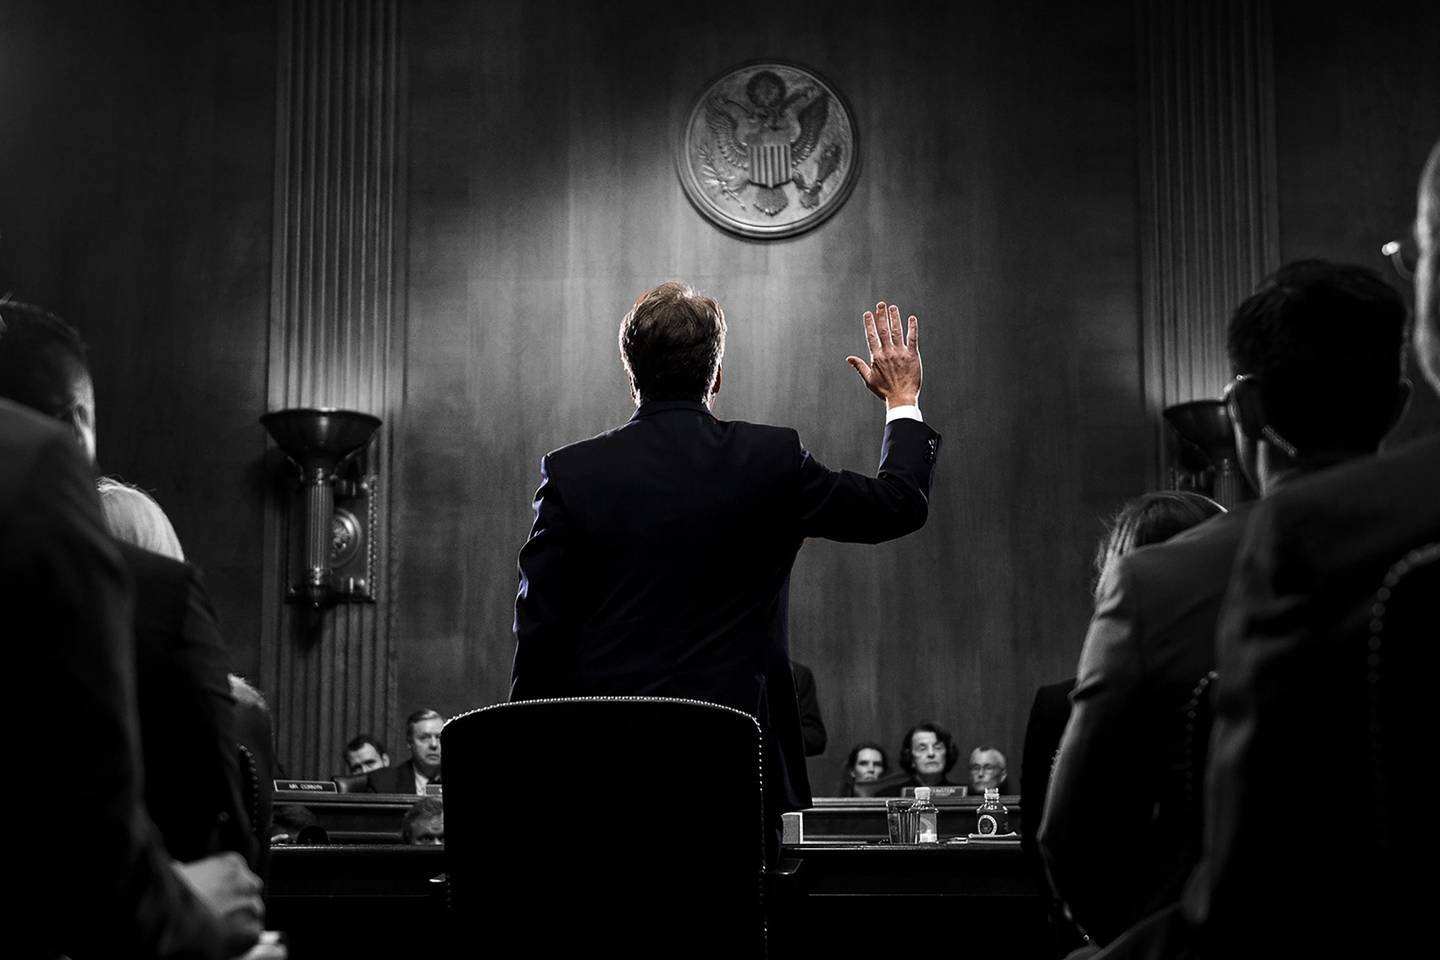 Brett Kavanaugh, juez asociado del Tribunal Supremo de Estados Unidos nominado por el presidente Donald Trump, jura su cargo durante una audiencia del Comité Judicial del Senado en Washington, Estados Unidos, el jueves 27 de septiembre de 2018.